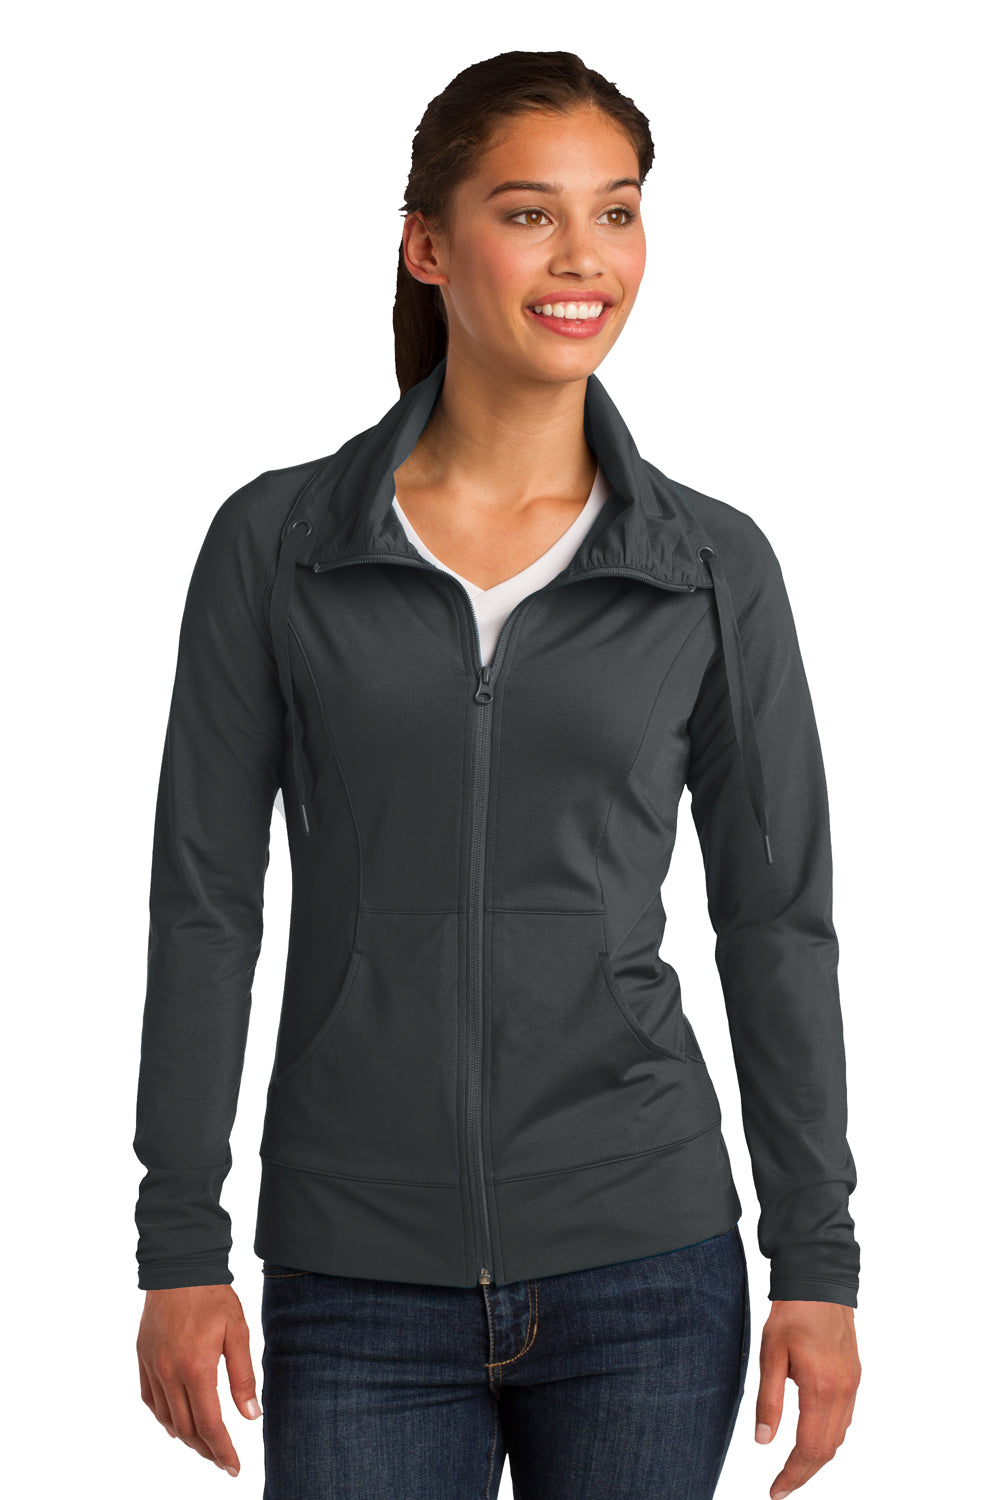 Sport-Tek LST852 Womens Sport-Wick Moisture Wicking Full Zip Jacket Charcoal Grey Front